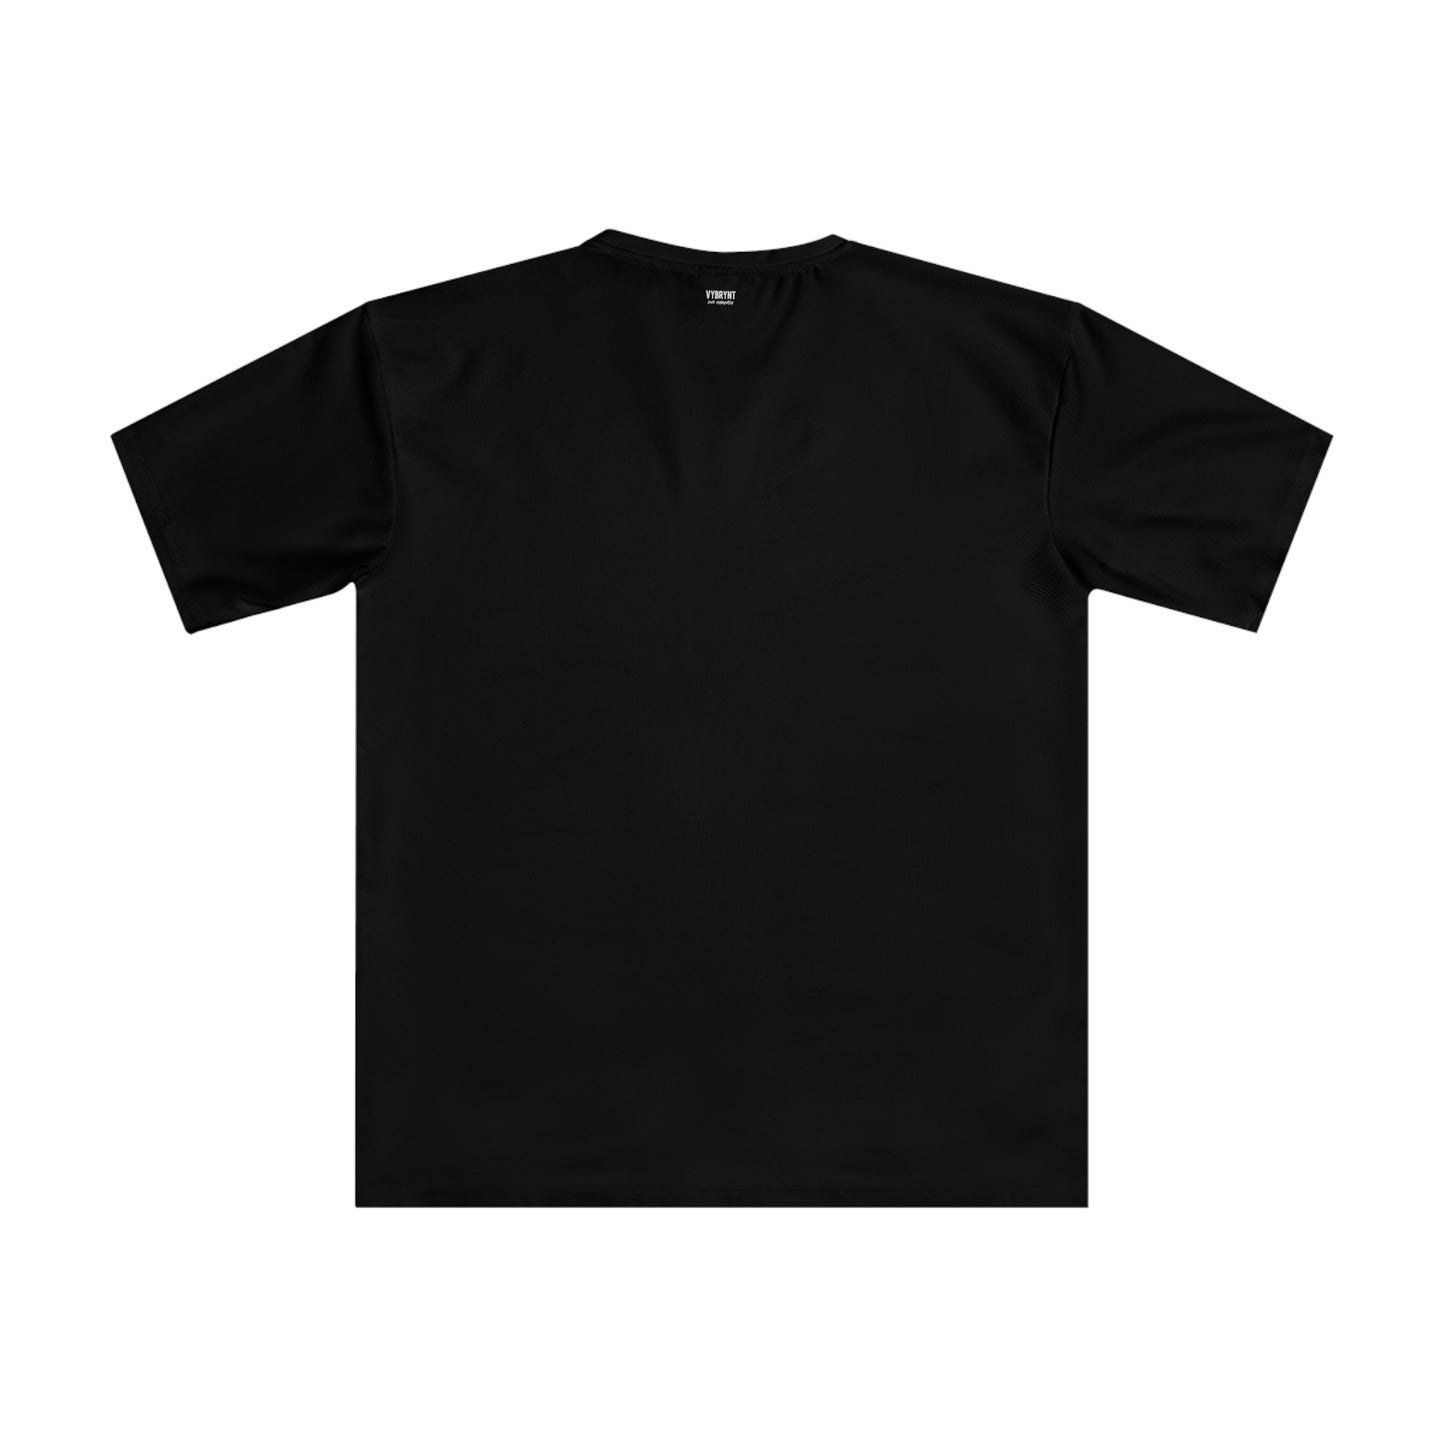 Lenox Lounge Men's Black T-shirt